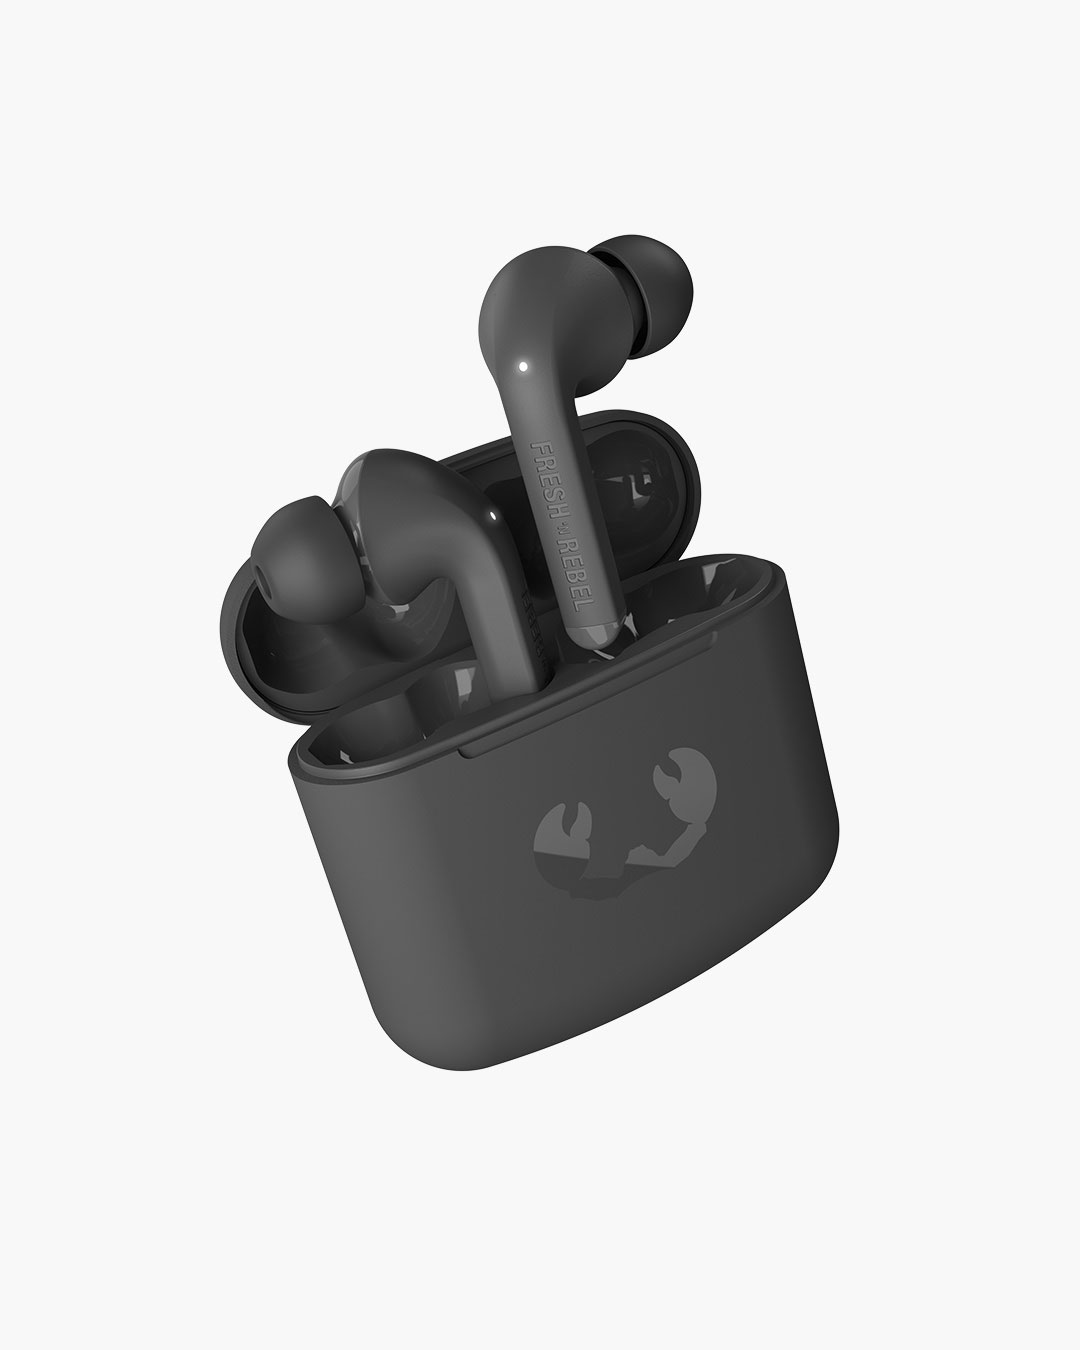 Fresh 'n Rebel - Twins 1 - True Wireless In-ear headphones with ear tip - Storm Grey